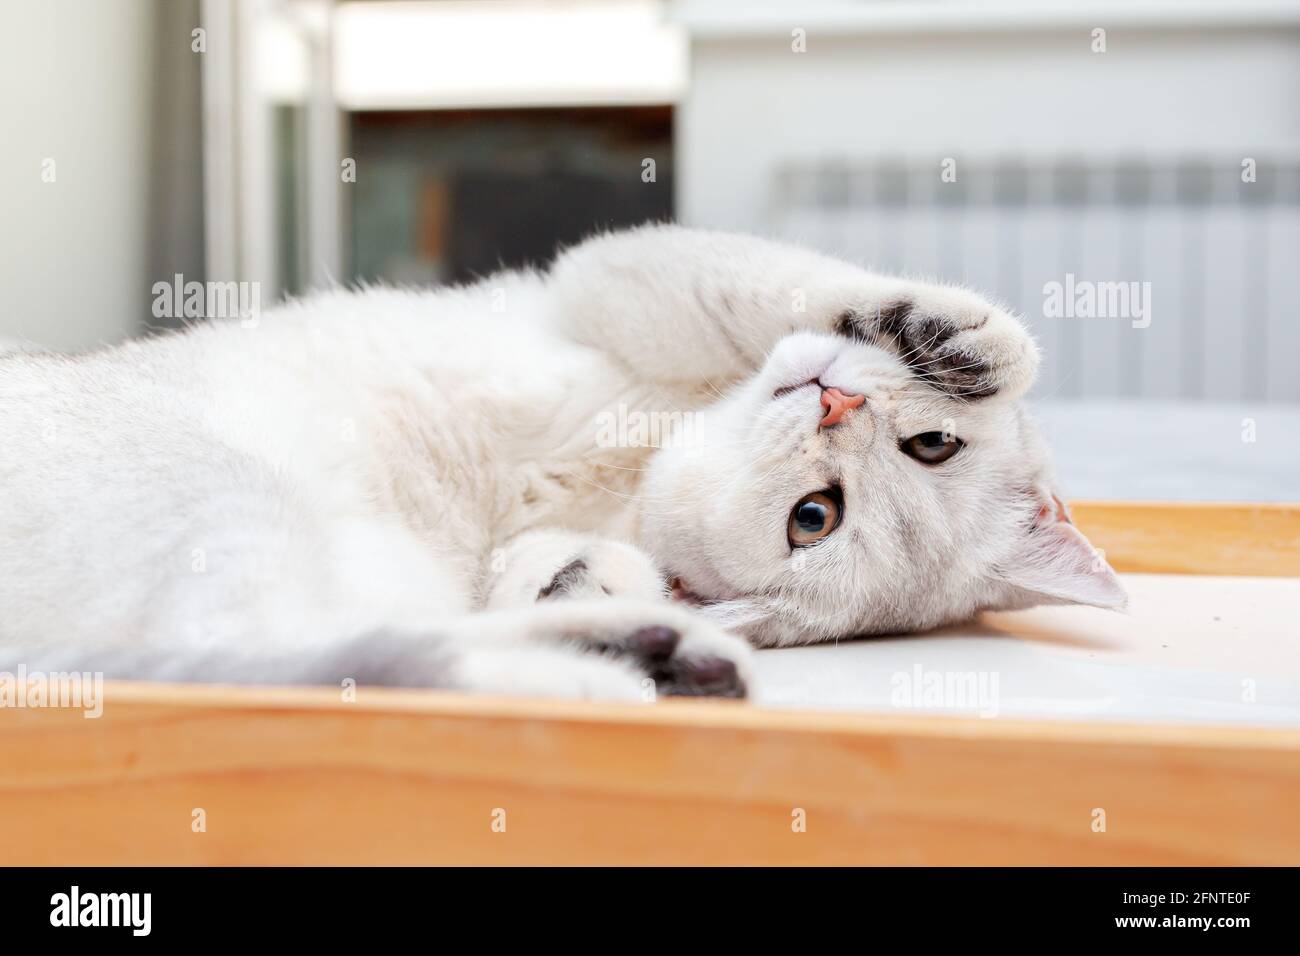 Faule weiße britische Katze, die auf einem Tablett liegt. Entspanntes, schlafendes Kätzchen, morgens im Schlafzimmer. Stockfoto